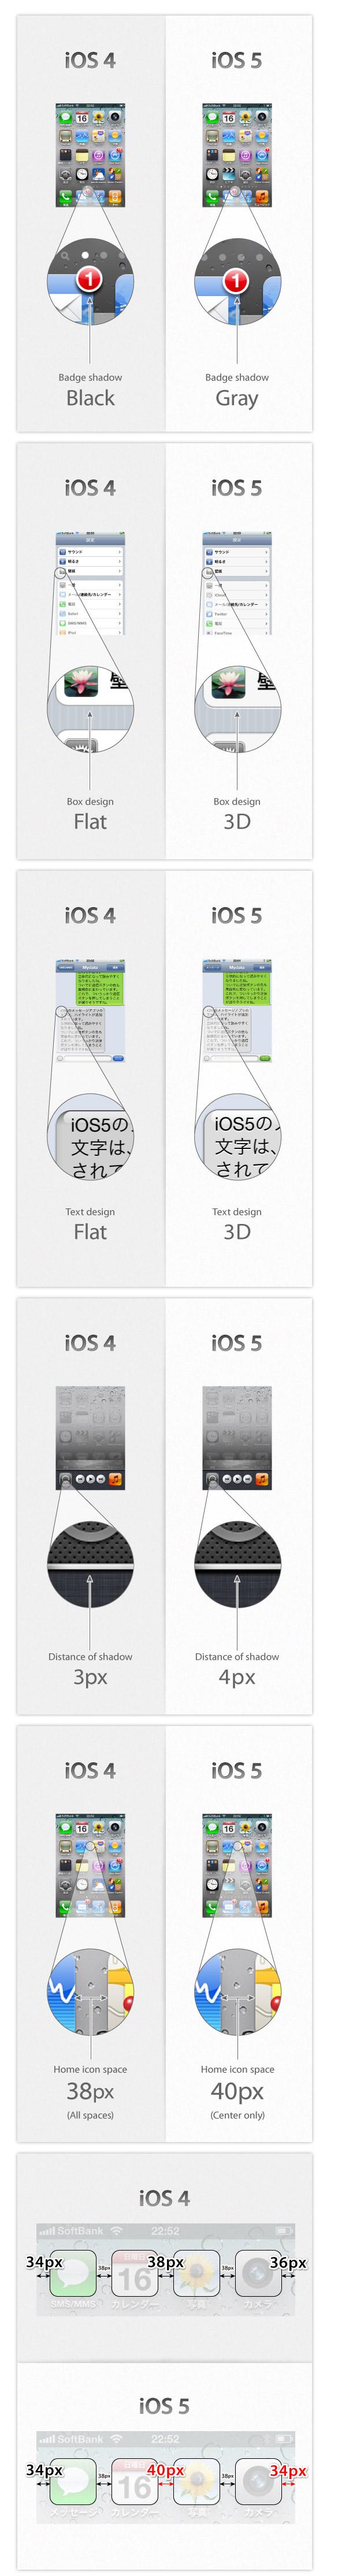 ios 4 51 Le comparatif iOS 4 et iOS 5 en image